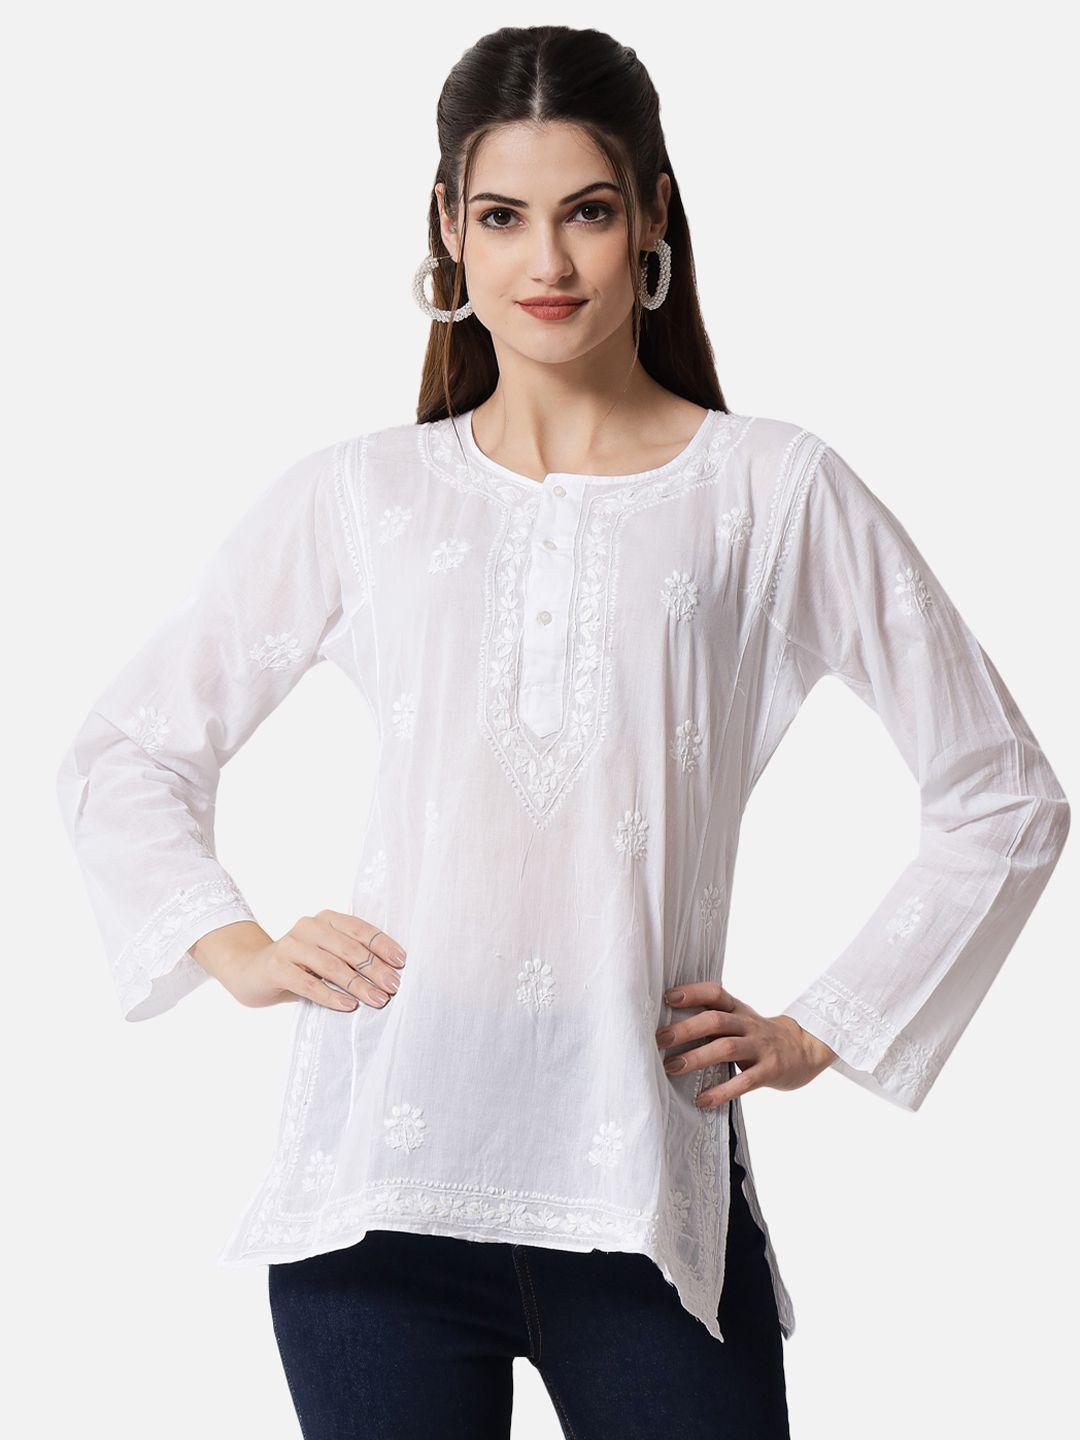 paramount-chikan-white-ethnic-motifs-embroidered-chikankari-pure-cotton-sustainable-kurti